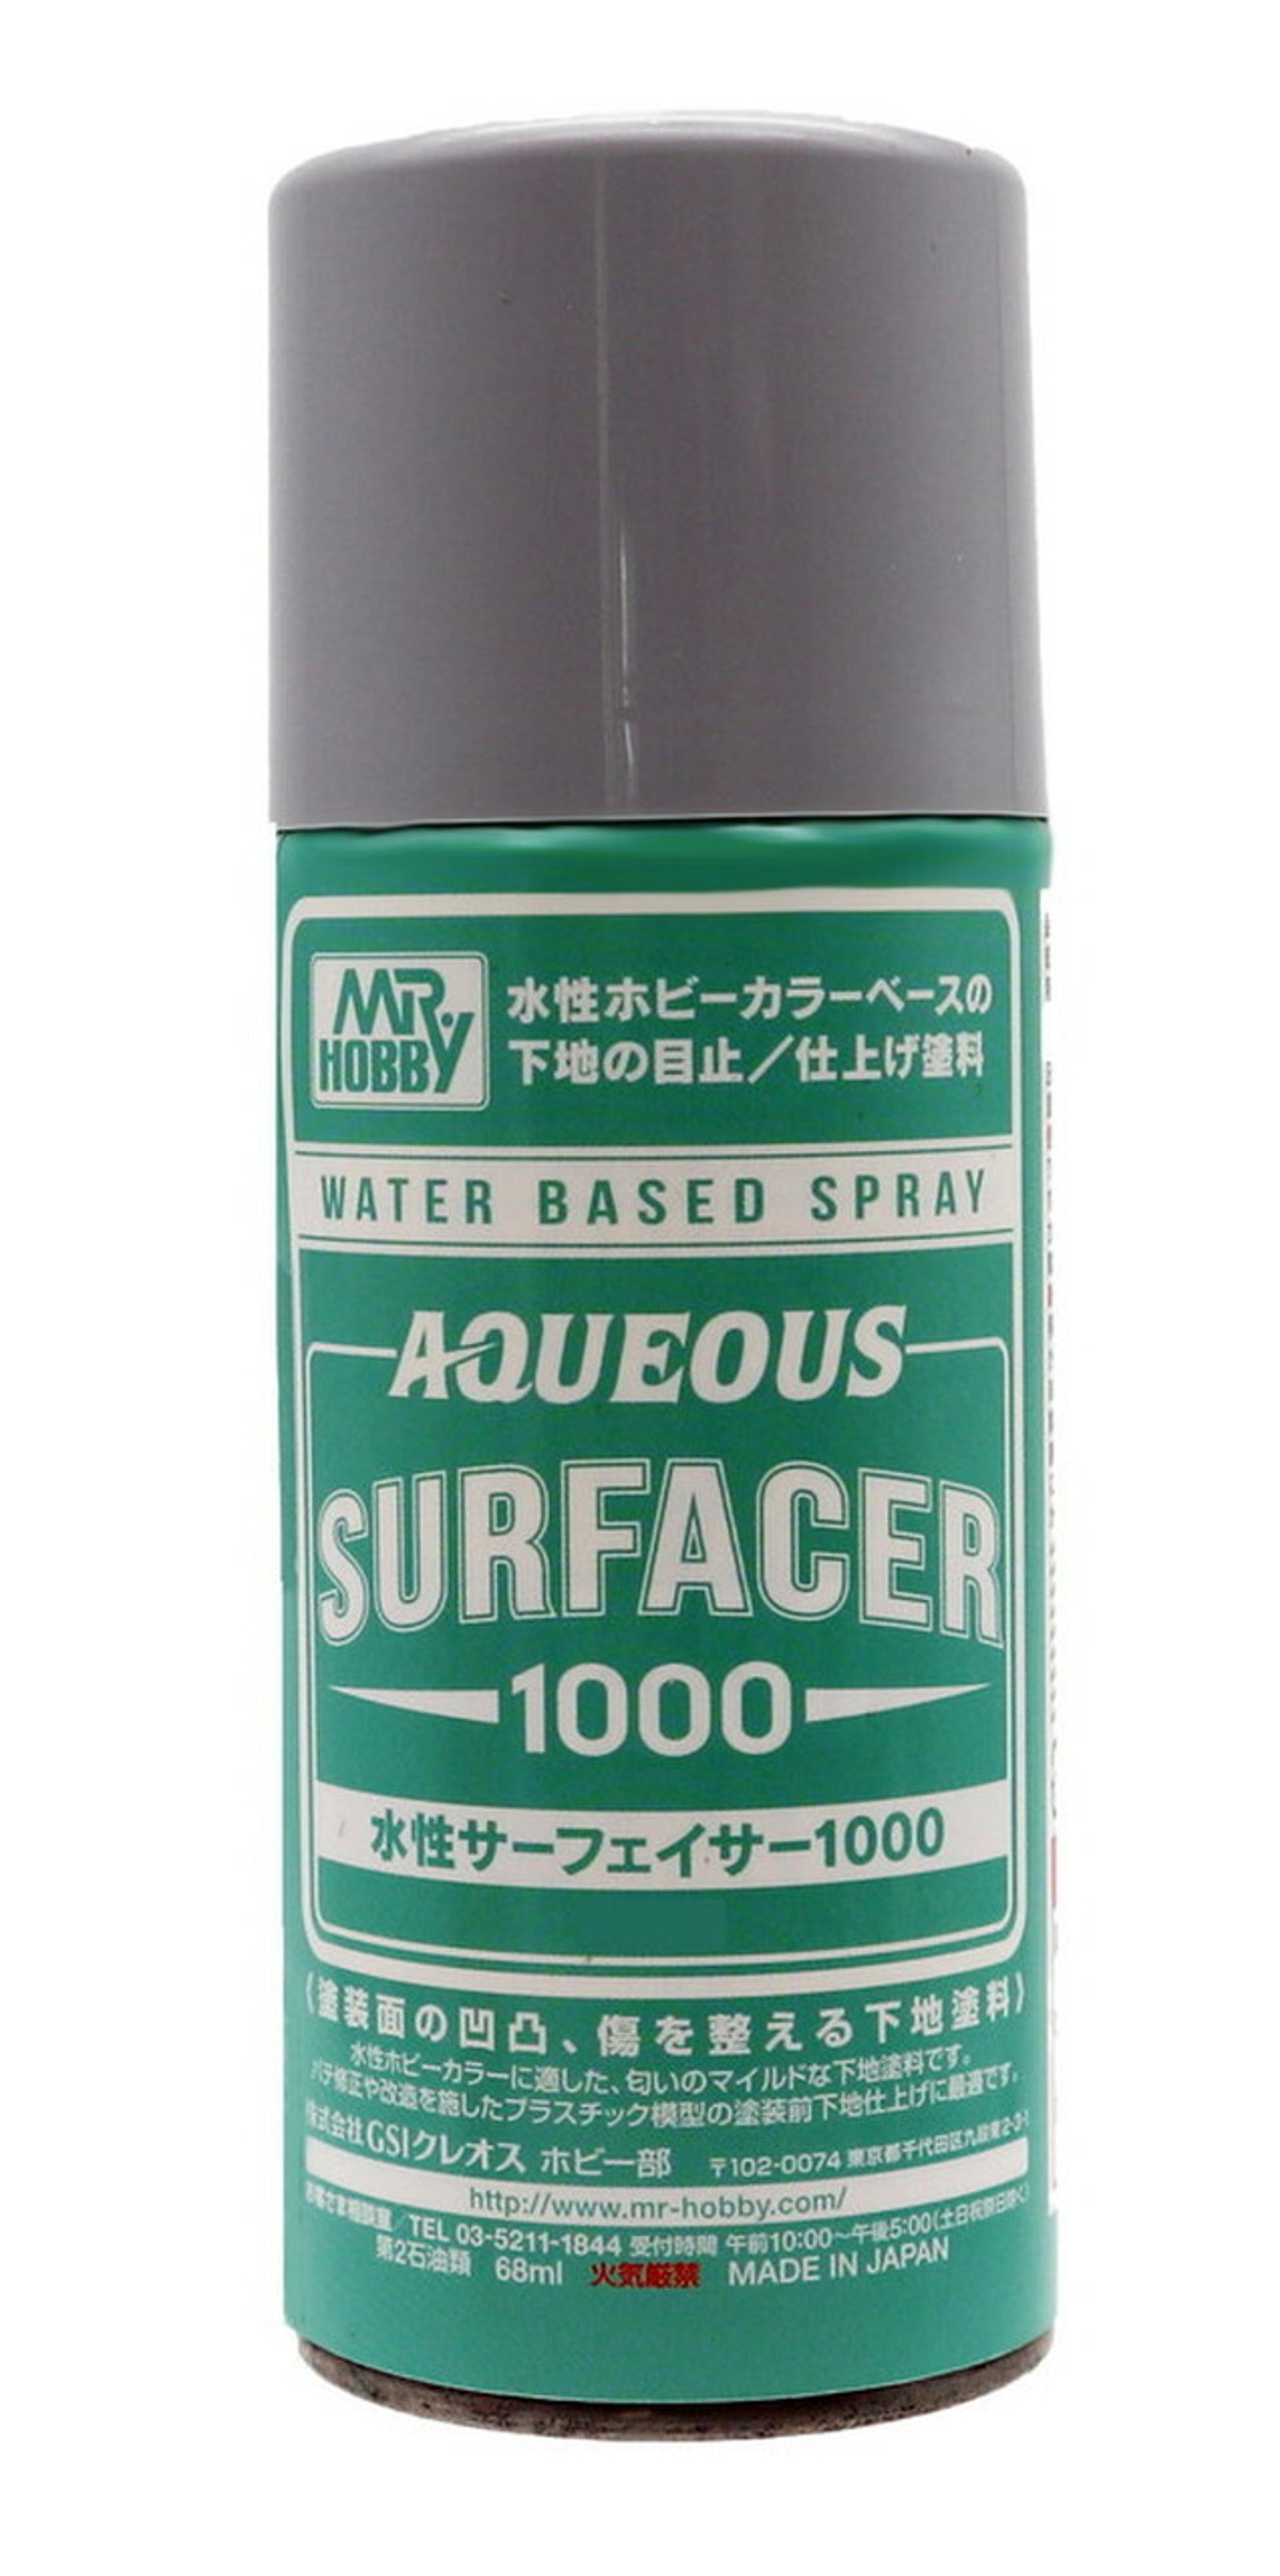 Mr. Hobby Aqueous Surfacer 1000 Spray (170mL)